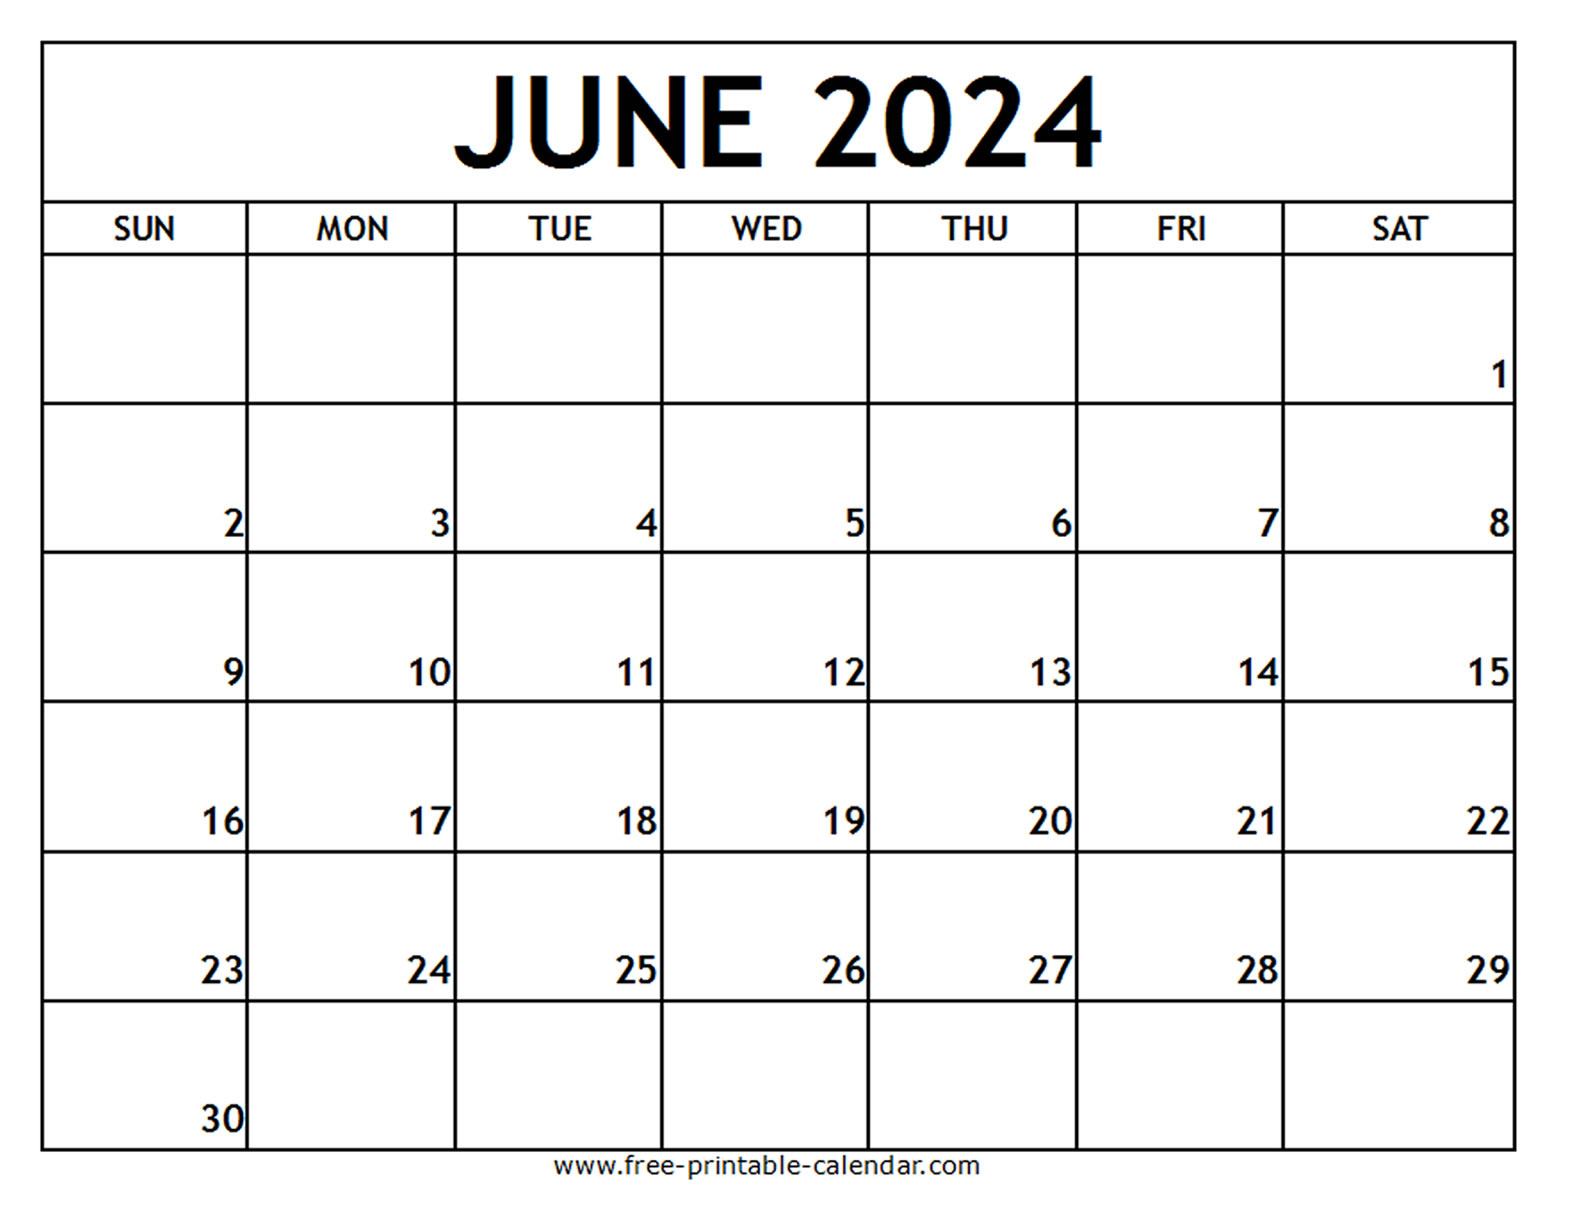 June 2024 Printable Calendar - Free-Printable-Calendar | Print June July Calendar 2024